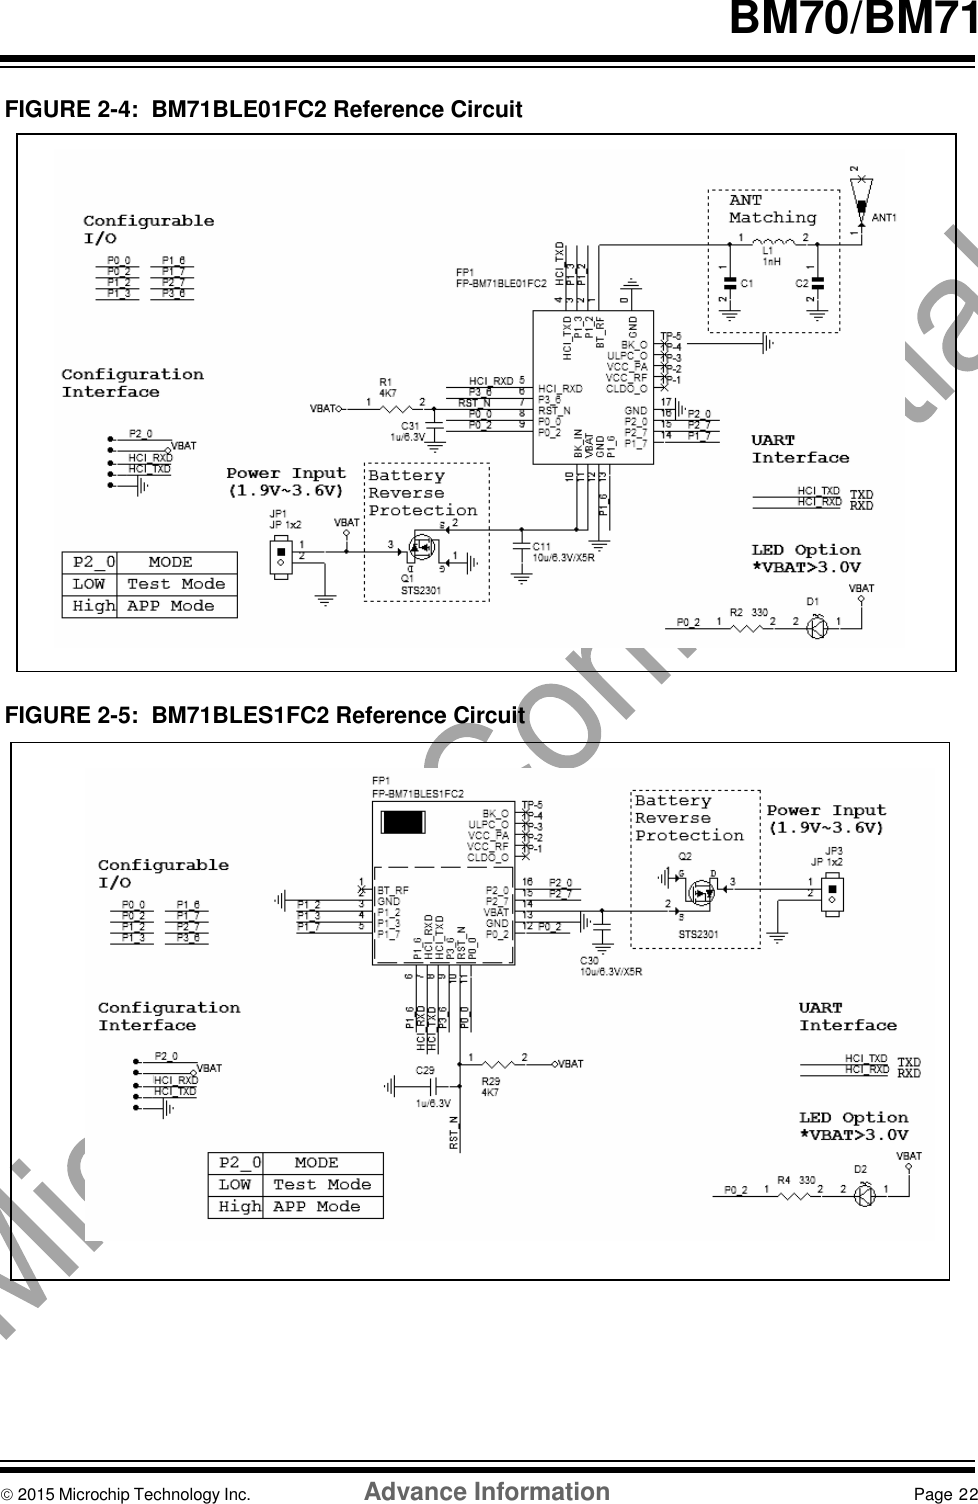    BM70/BM71   FIGURE 2-4:  BM71BLE01FC2 Reference Circuit                       FIGURE 2-5:  BM71BLES1FC2 Reference Circuit                             2015 Microchip Technology Inc.  Advance Information  Page 22     